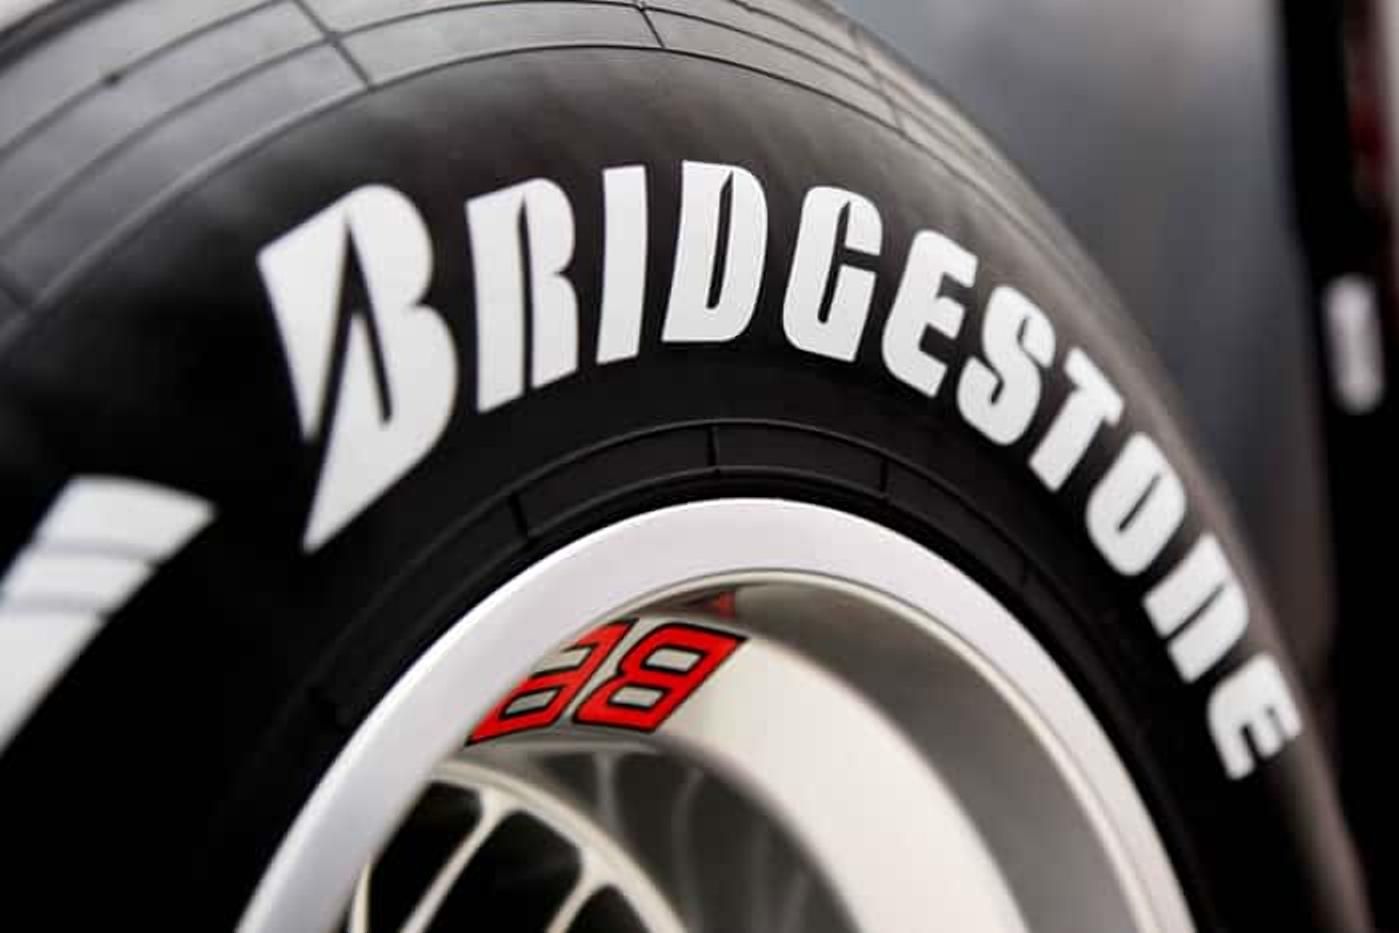 Втеча продовжується: японський виробник шин "Bridgestone" закриває завод та експорт в Росію - 24 Канал